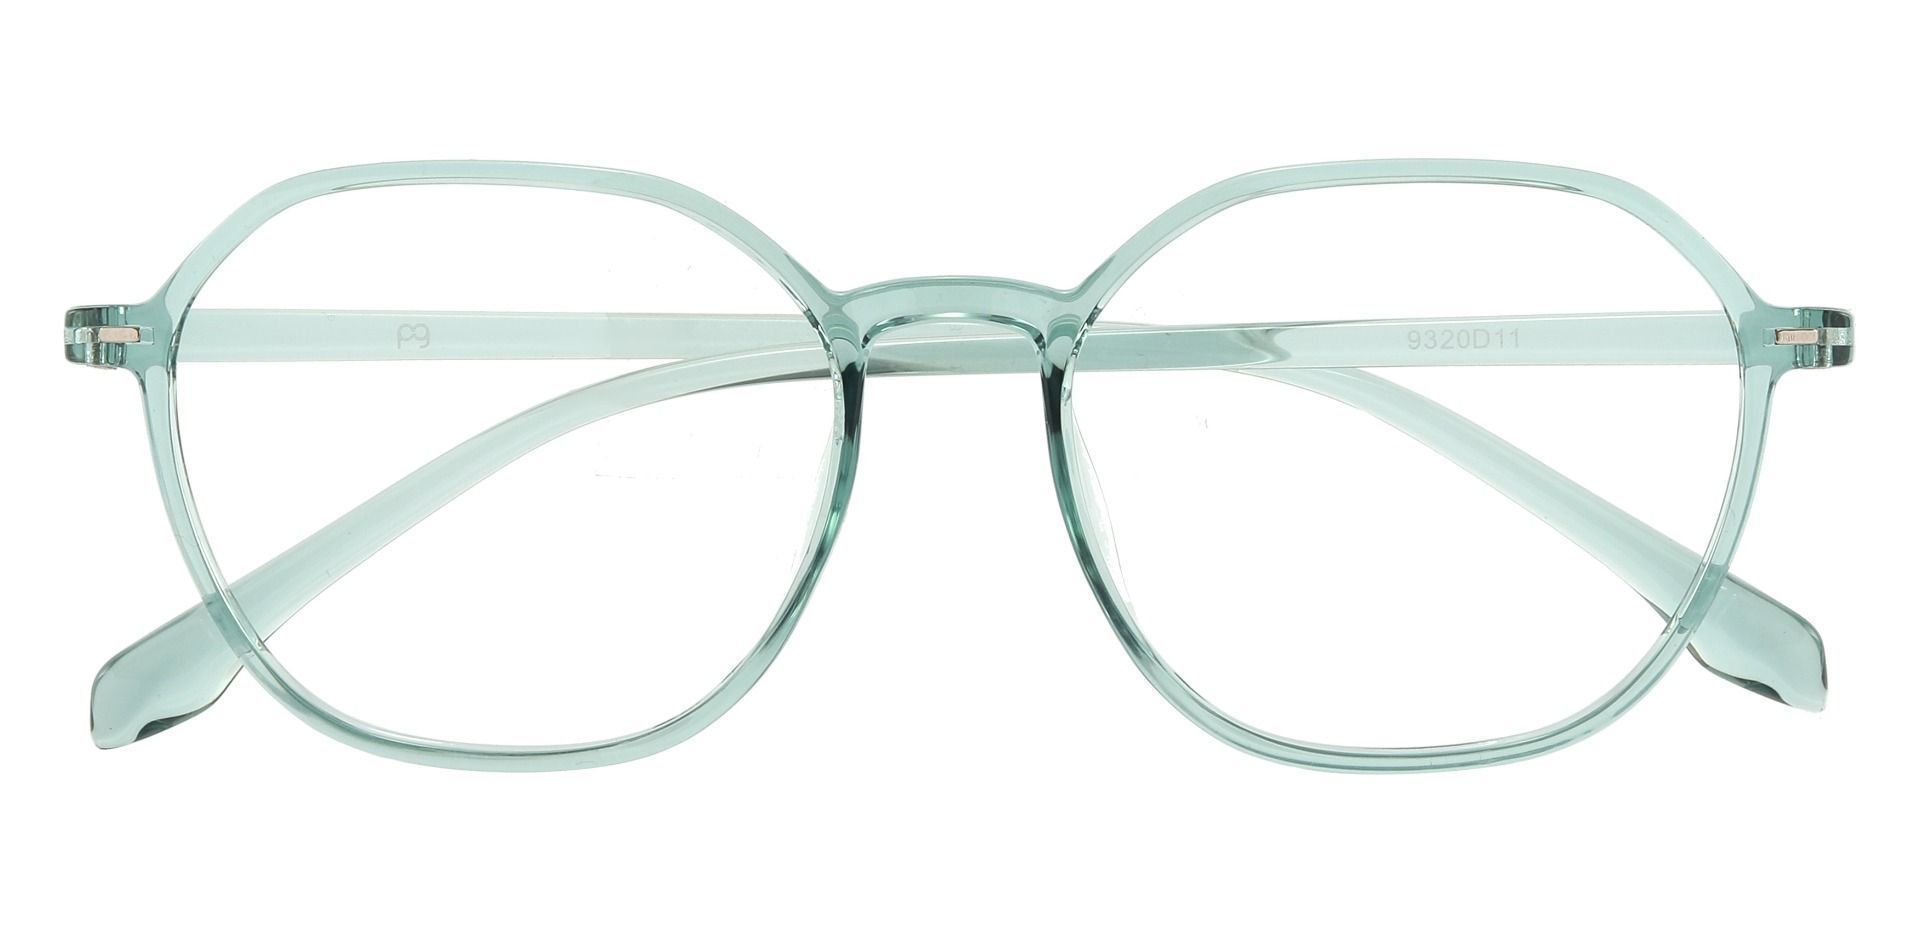 Detroit Geometric Eyeglasses Frame - Green